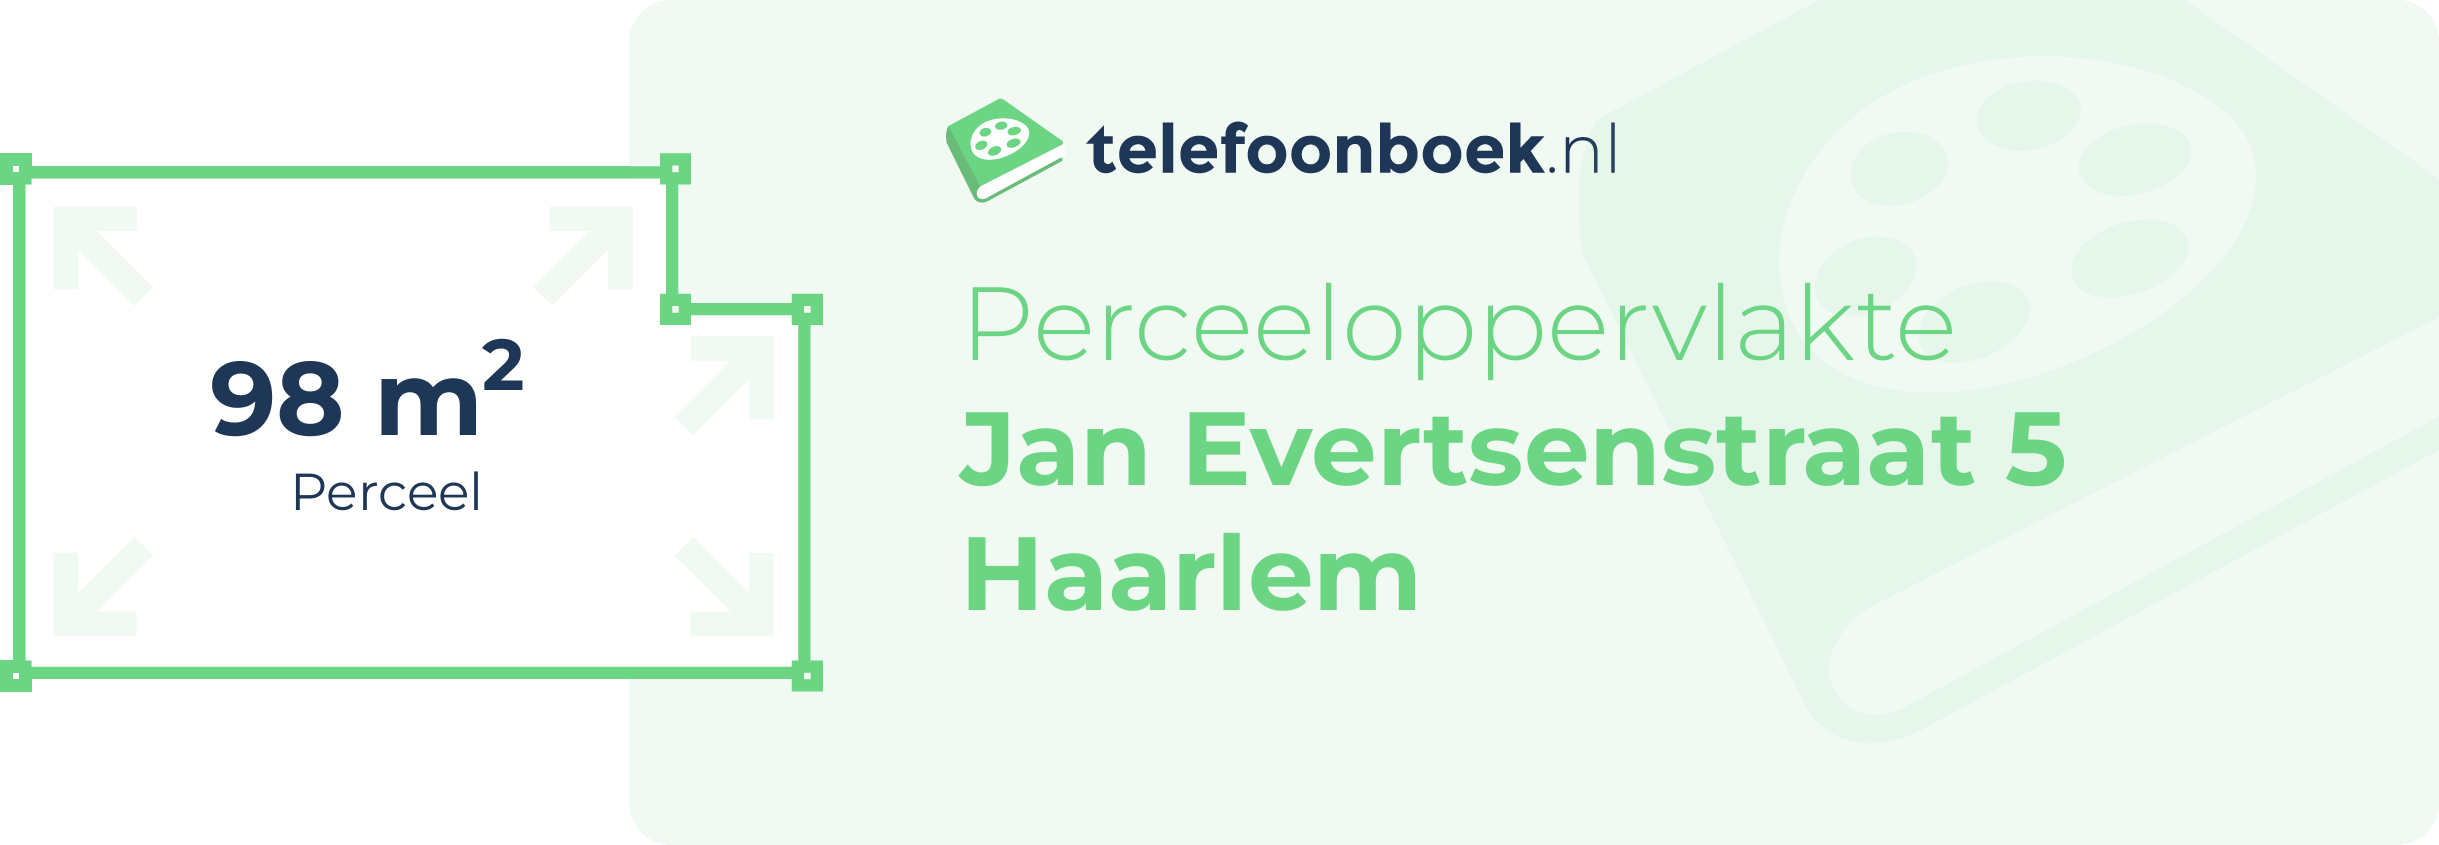 Perceeloppervlakte Jan Evertsenstraat 5 Haarlem